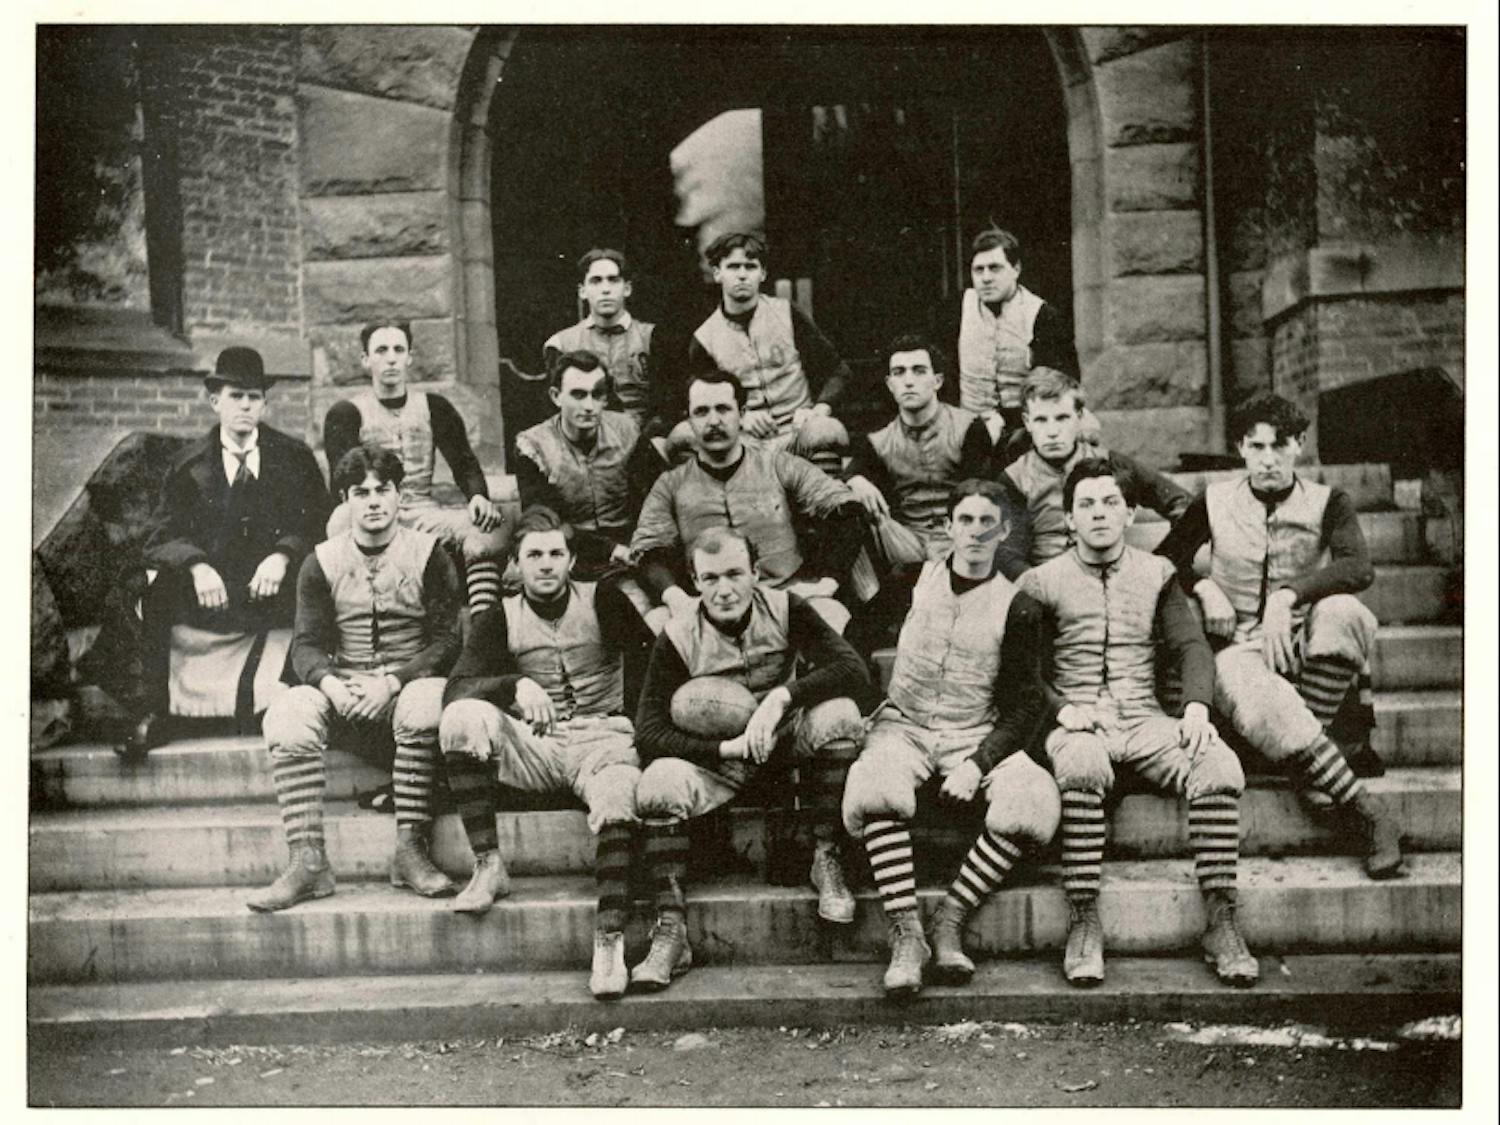 1899 Otterbein football team